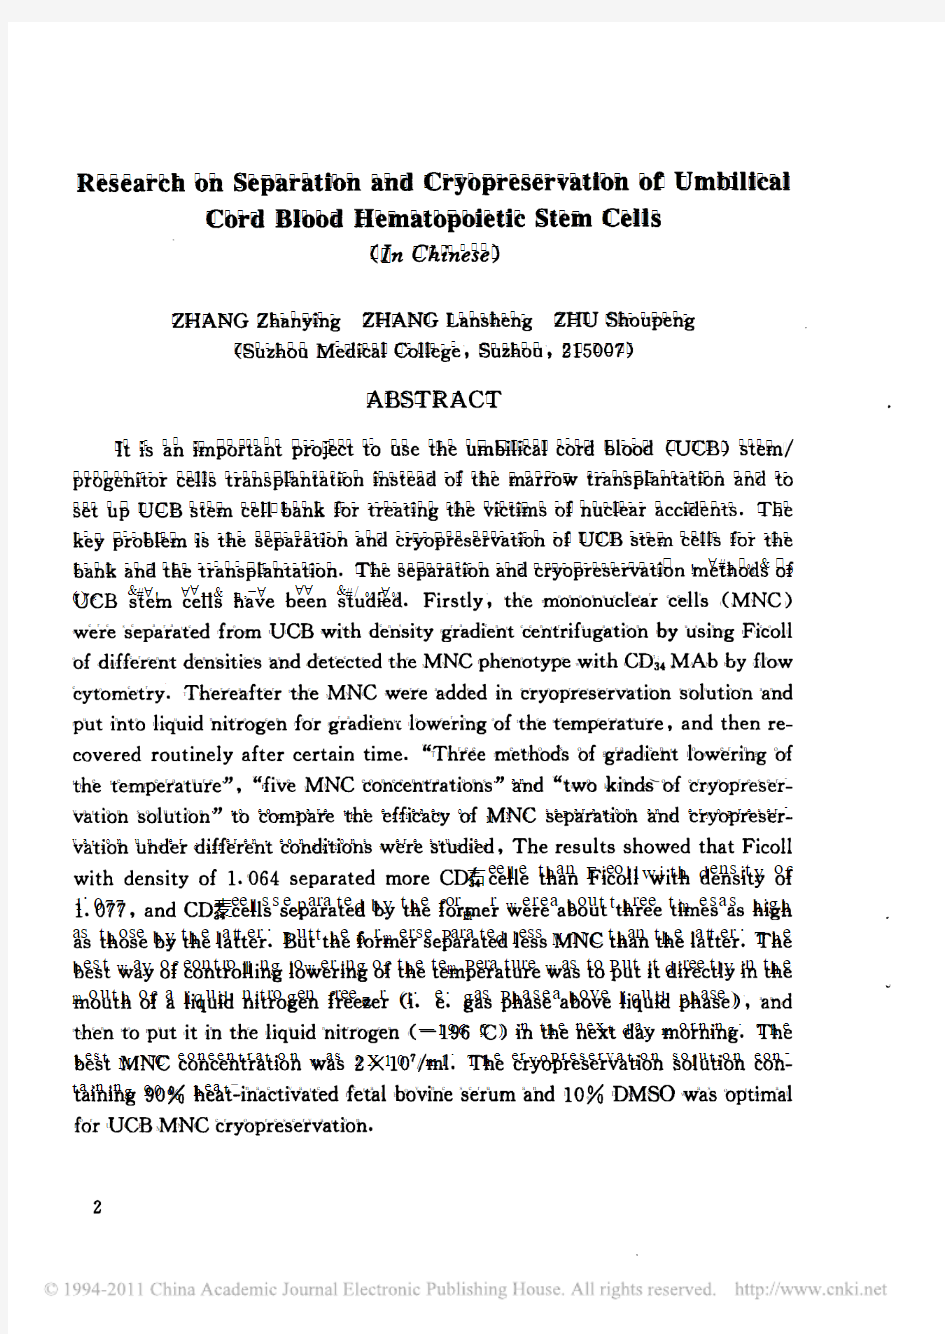 脐血造血干细胞的分离和冻存方法研究